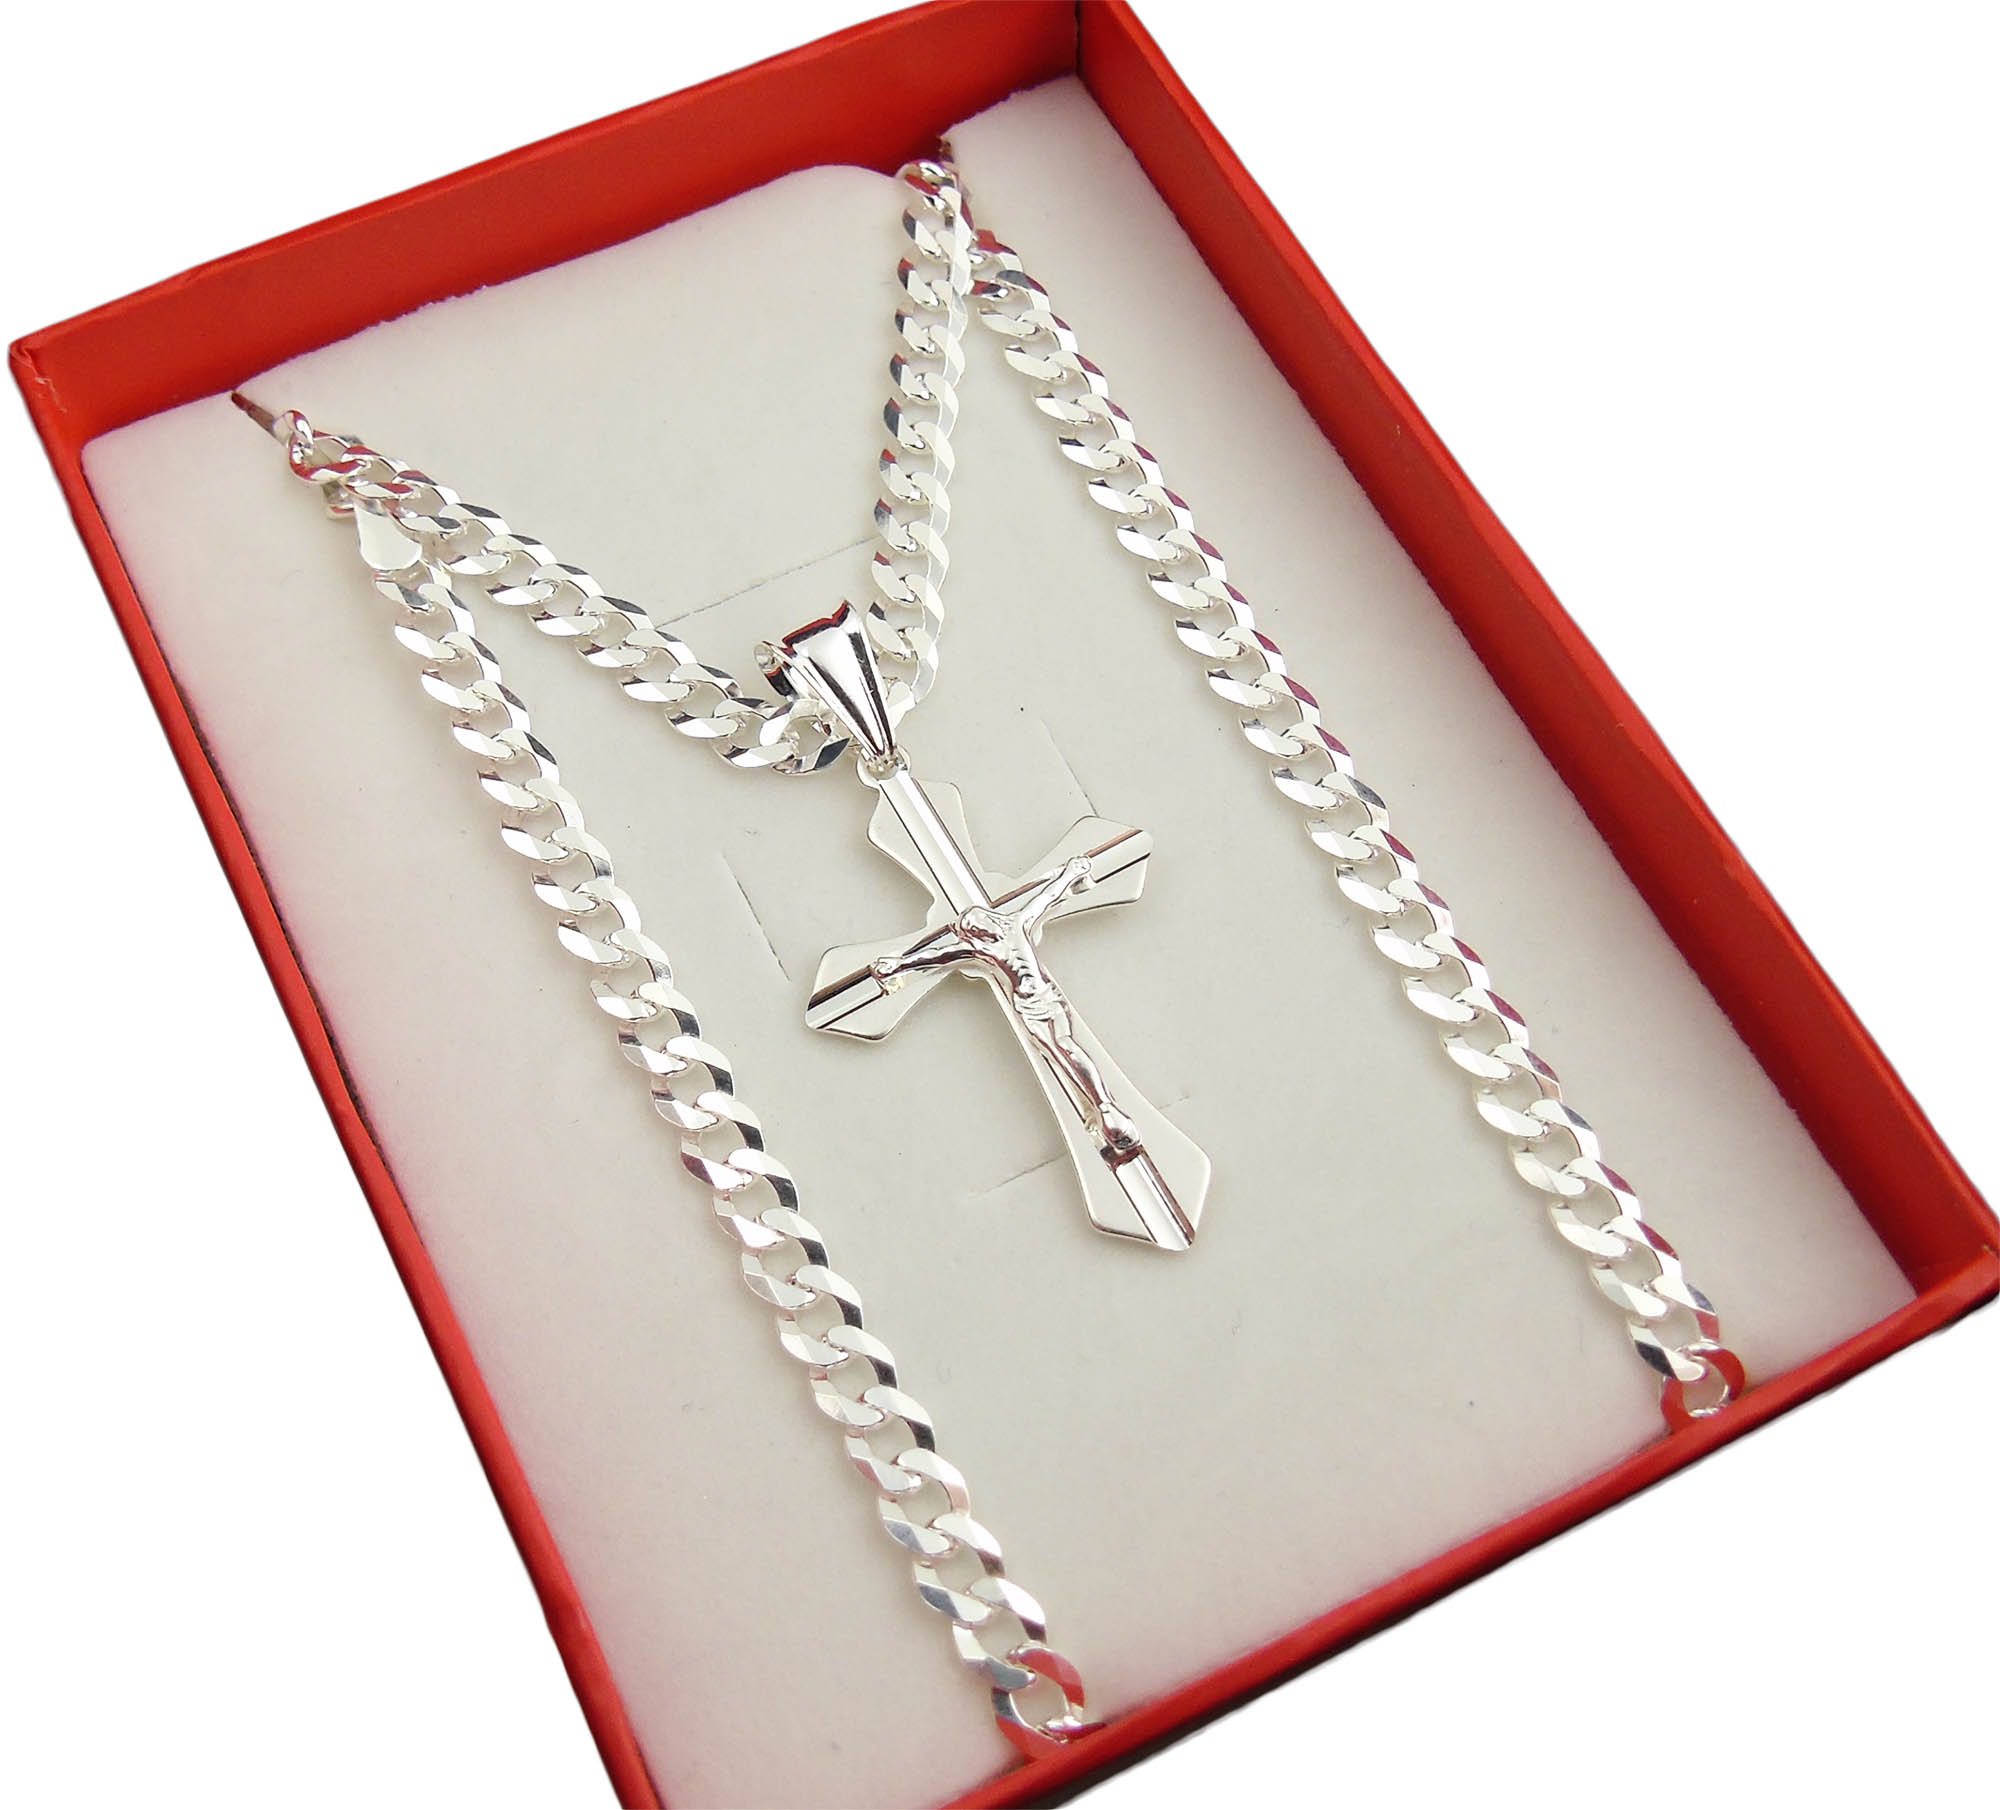 Серебряная цепочка с крестом мужская